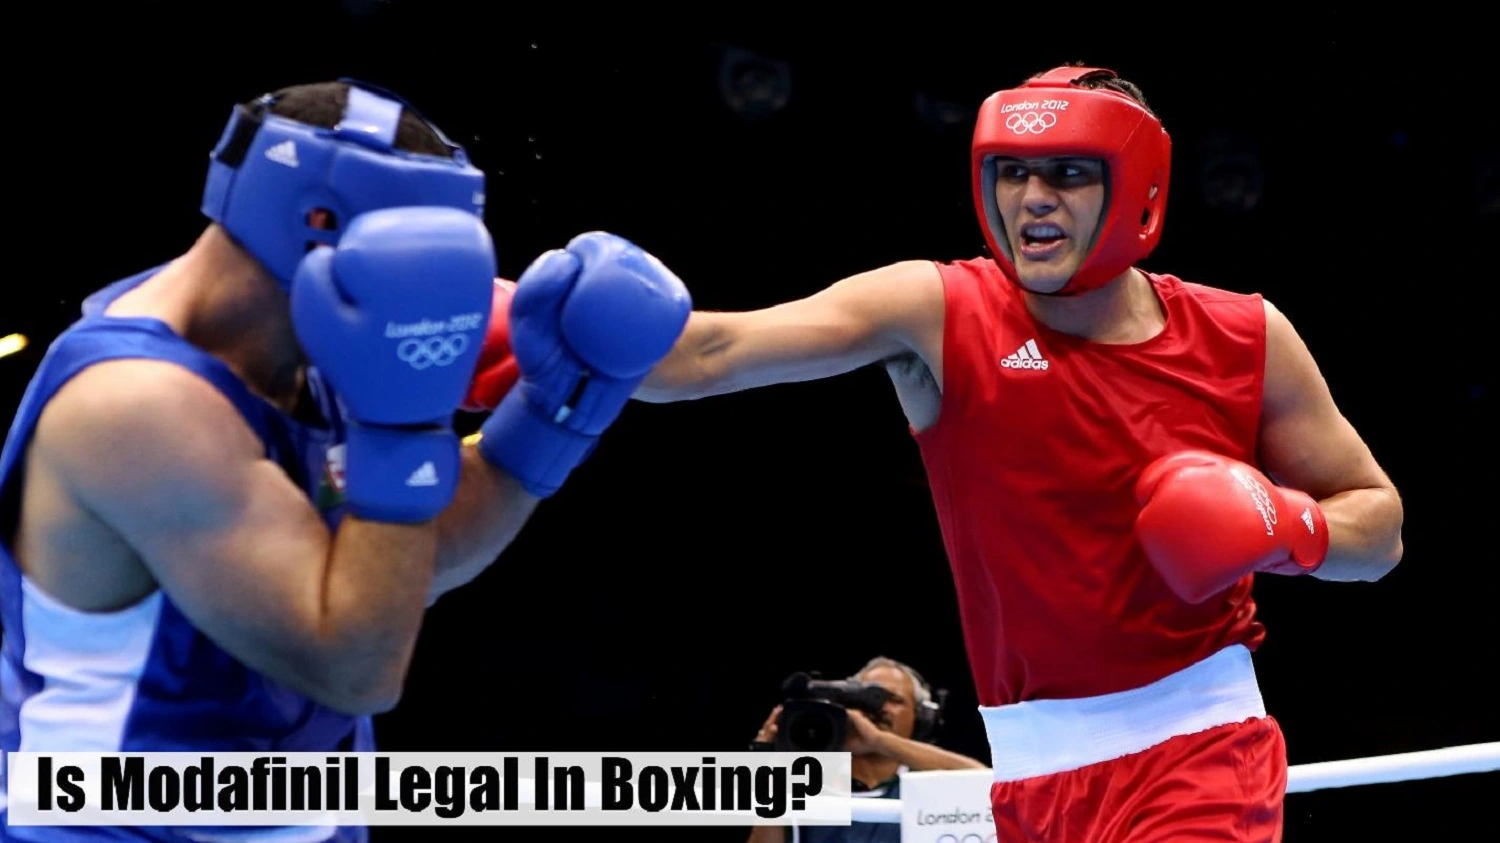 Modafinil legality in boxing